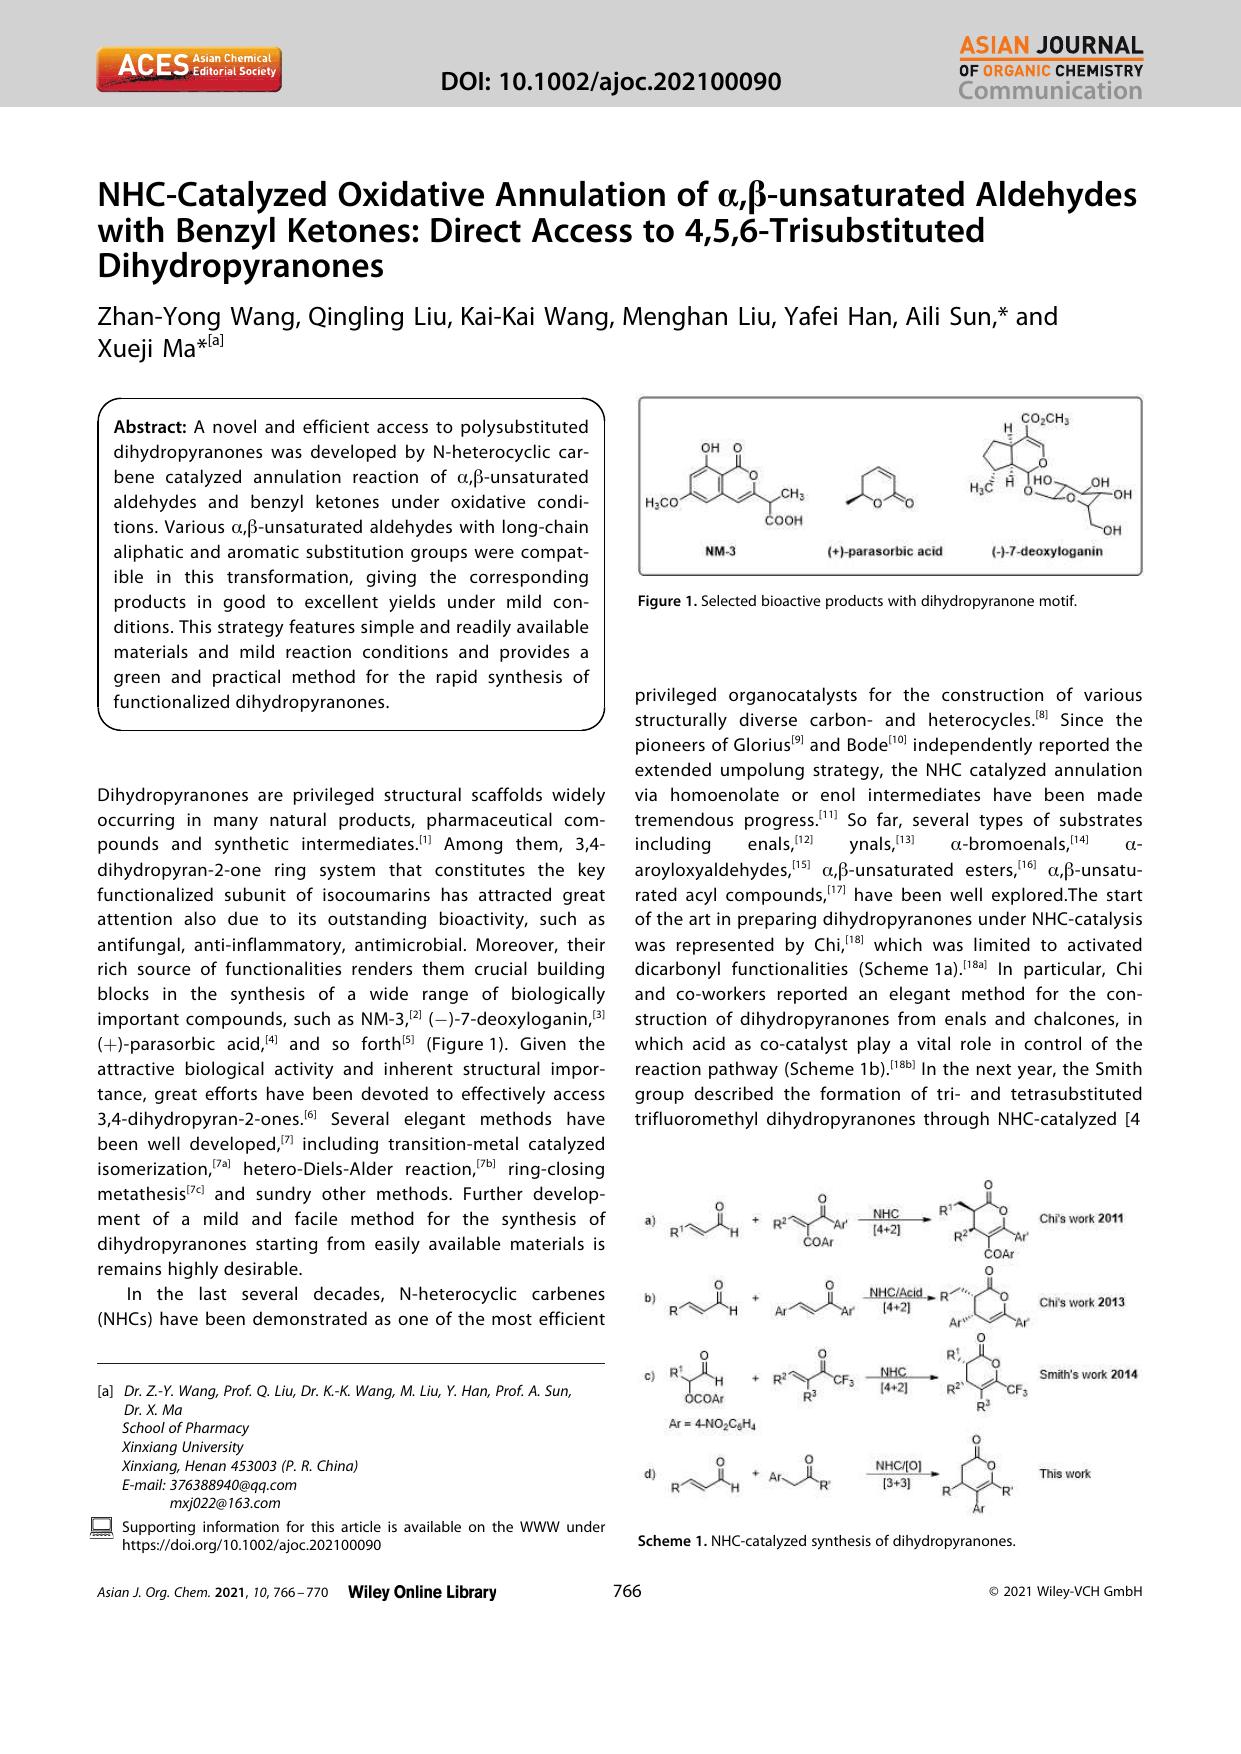 NHCâCatalyzed Oxidative Annulation of Î±,Î²âunsaturated Aldehydes with Benzyl Ketones: Direct Access to 4,5,6âTrisubstituted Dihydropyranones by Unknown